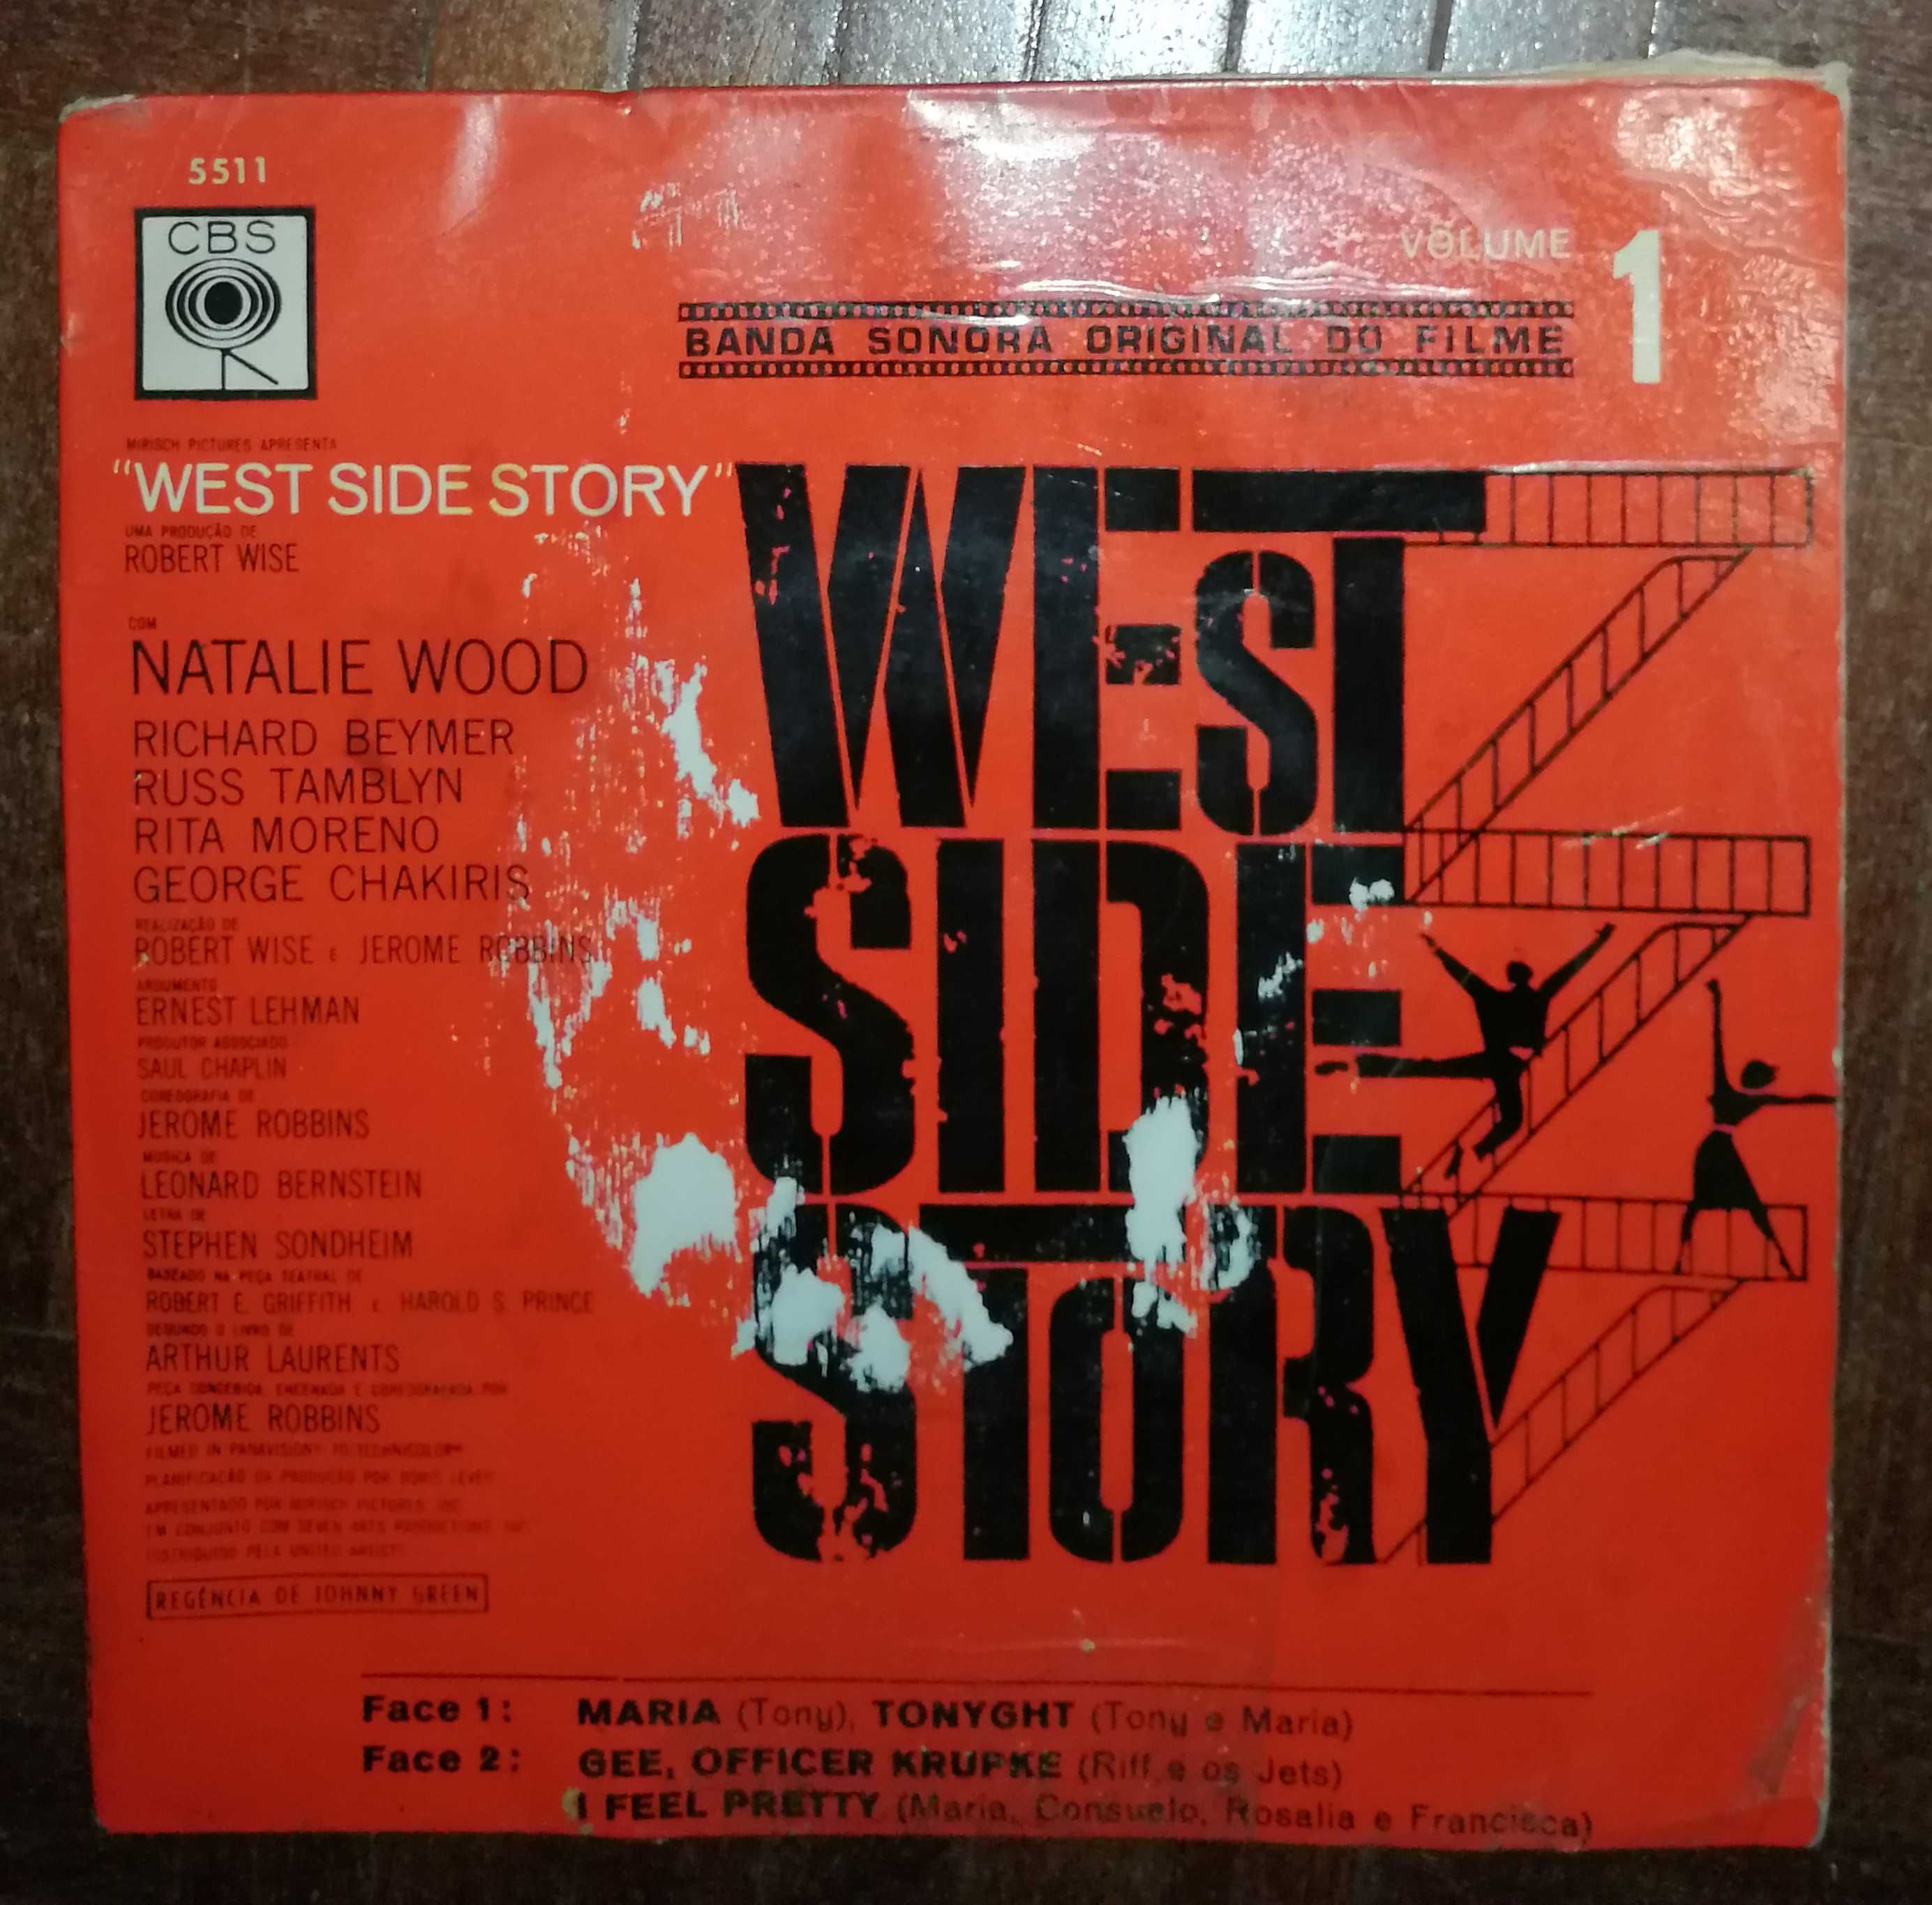 West Side Story - banda sonora original do filme